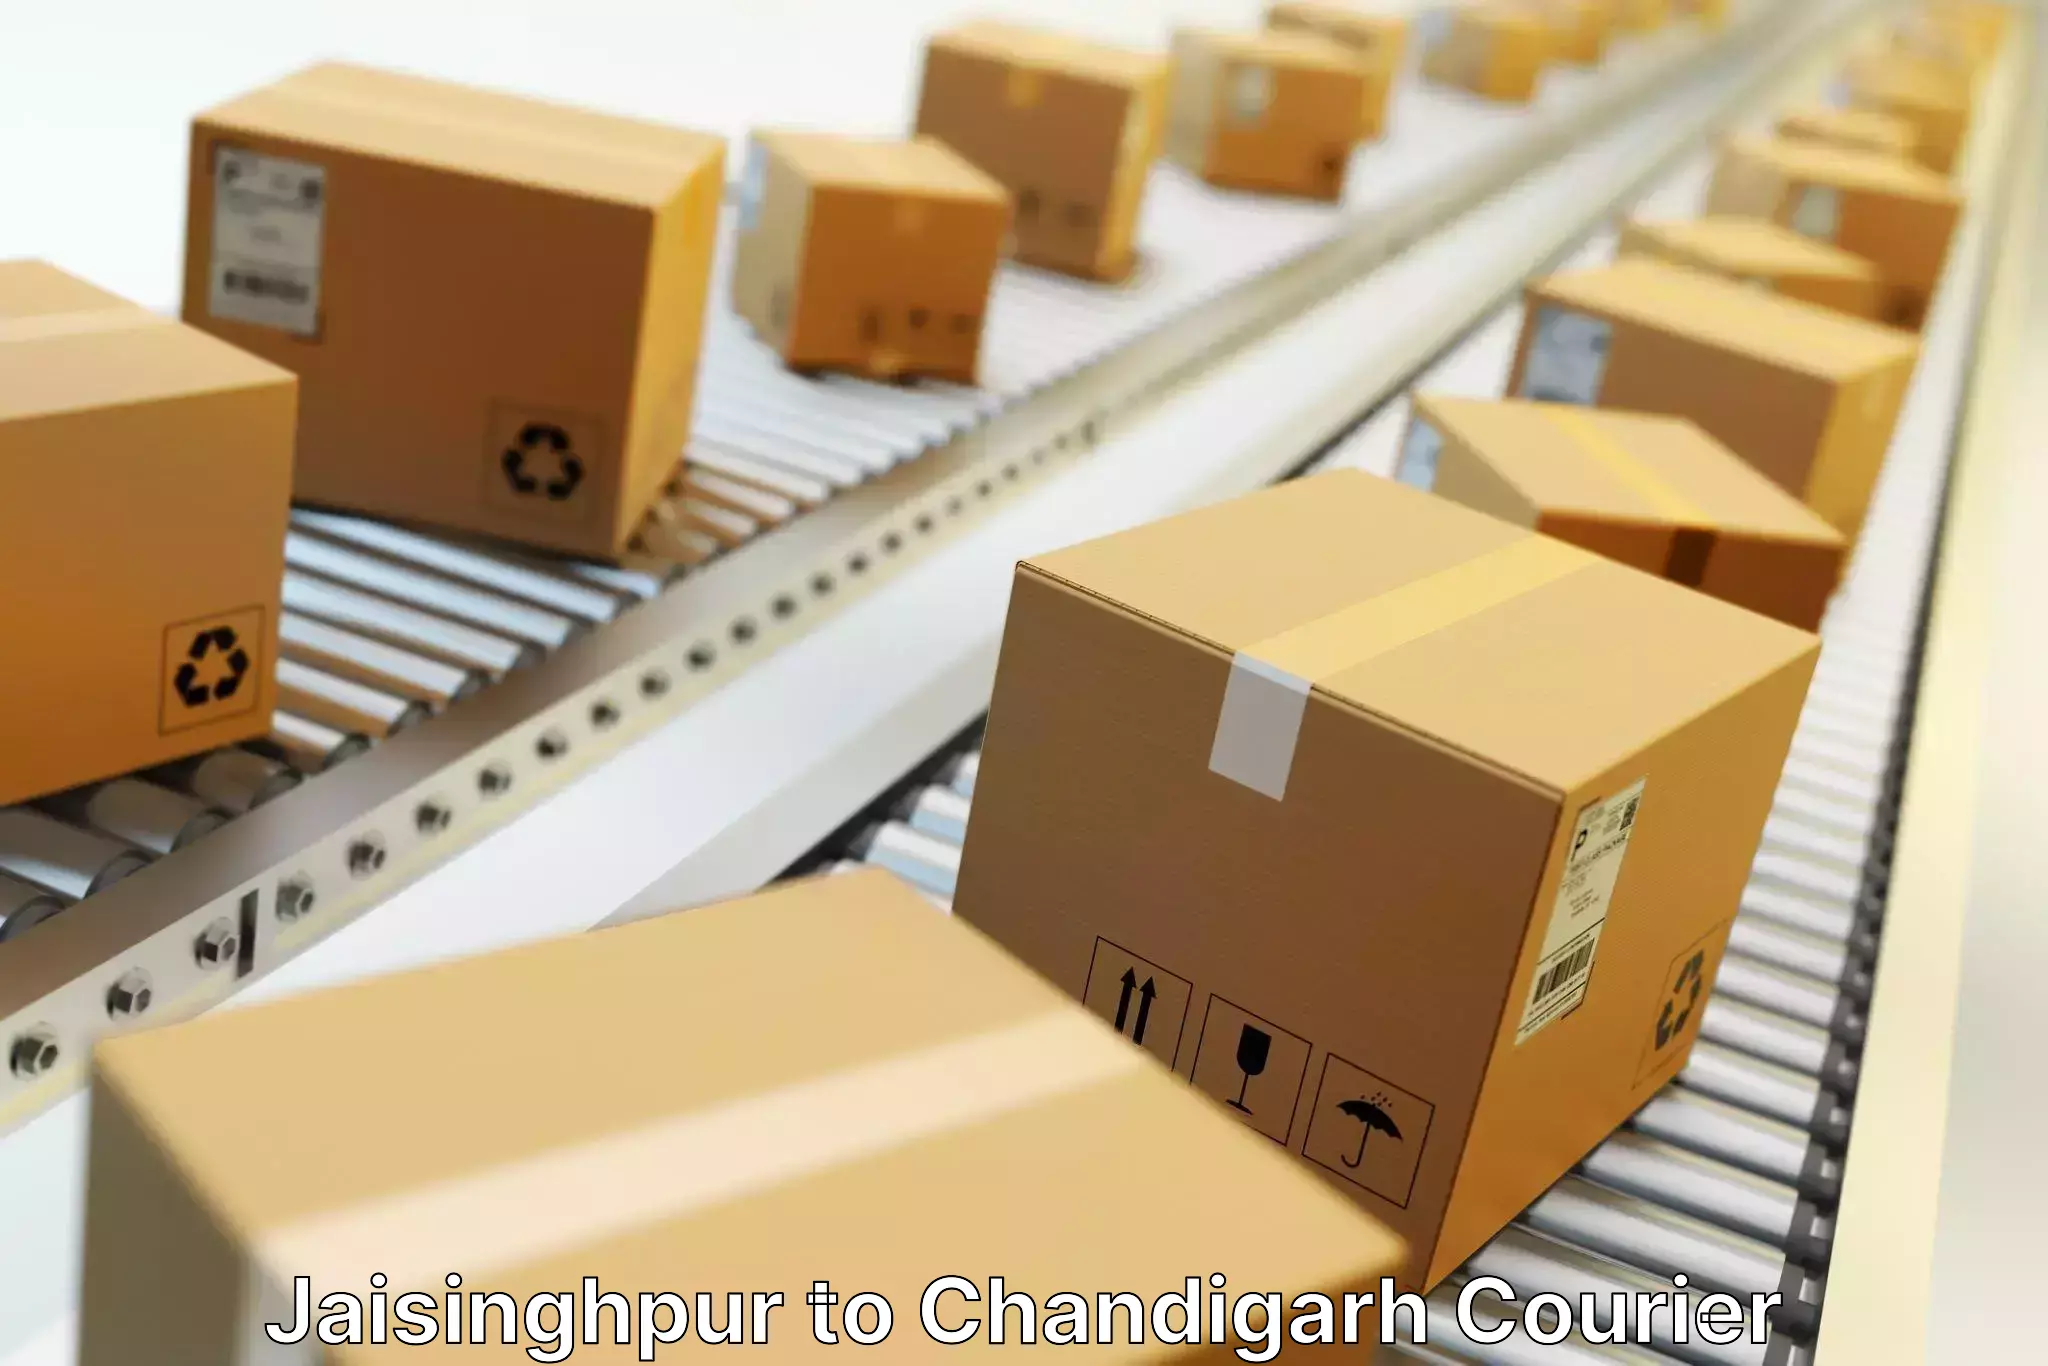 Seamless shipping experience Jaisinghpur to Panjab University Chandigarh